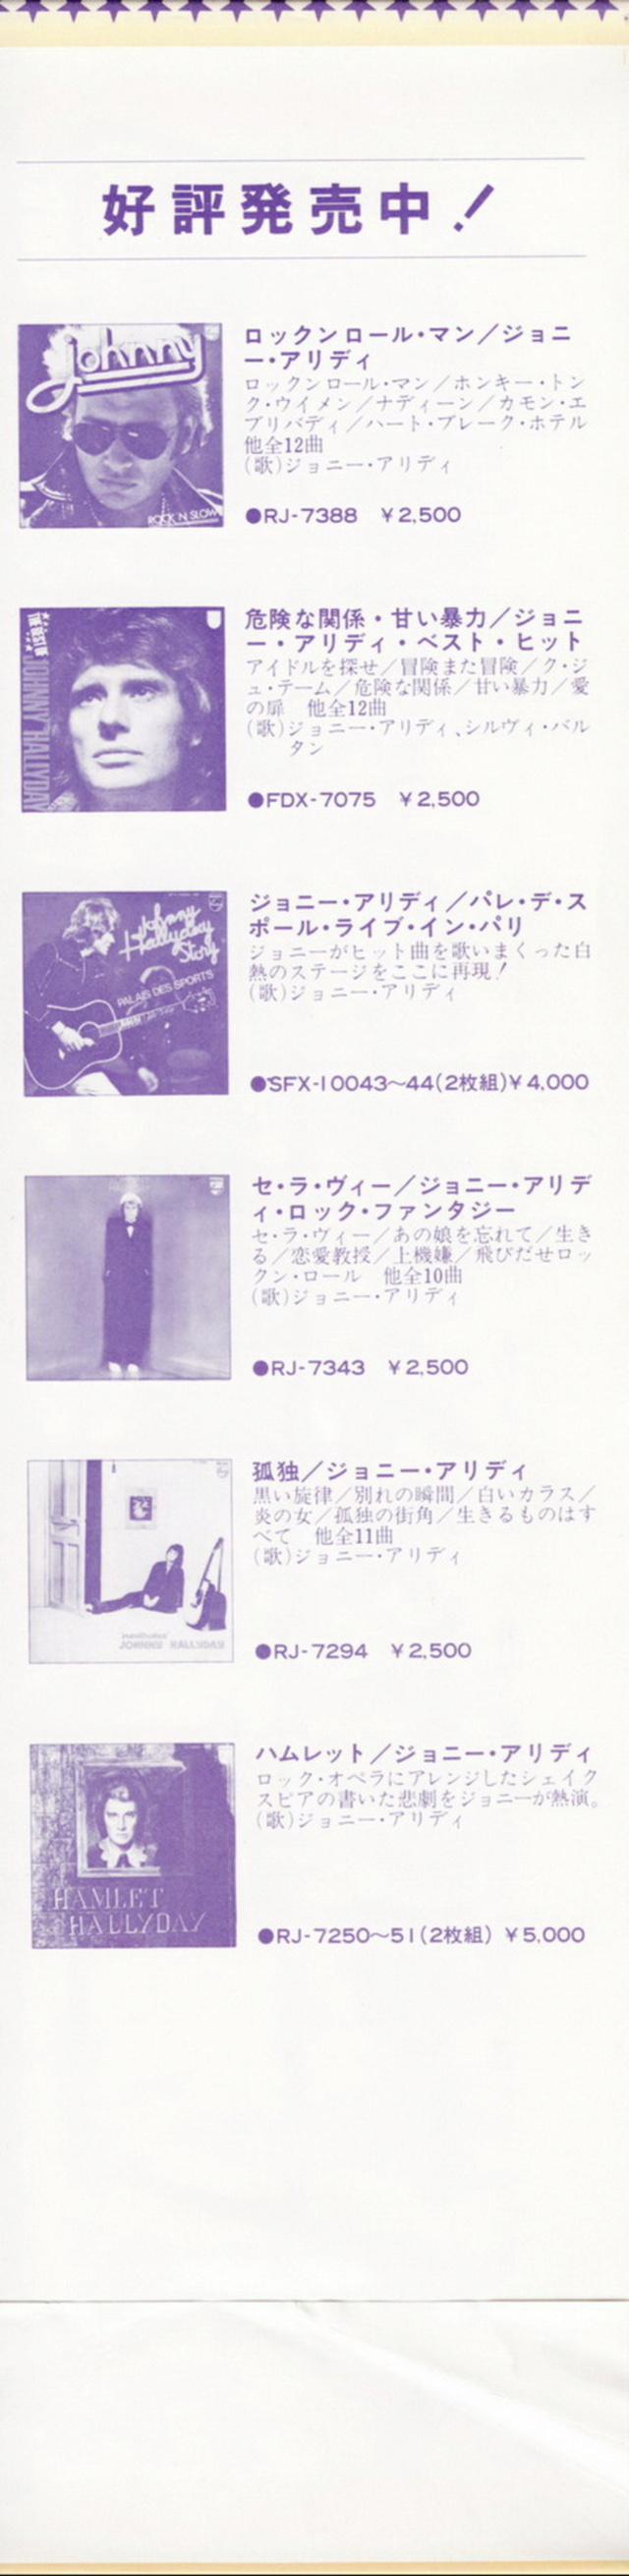 Discographie Japonaise - 4ème partie (33 T COMPILATION) - Page 17 Jpn_fd30